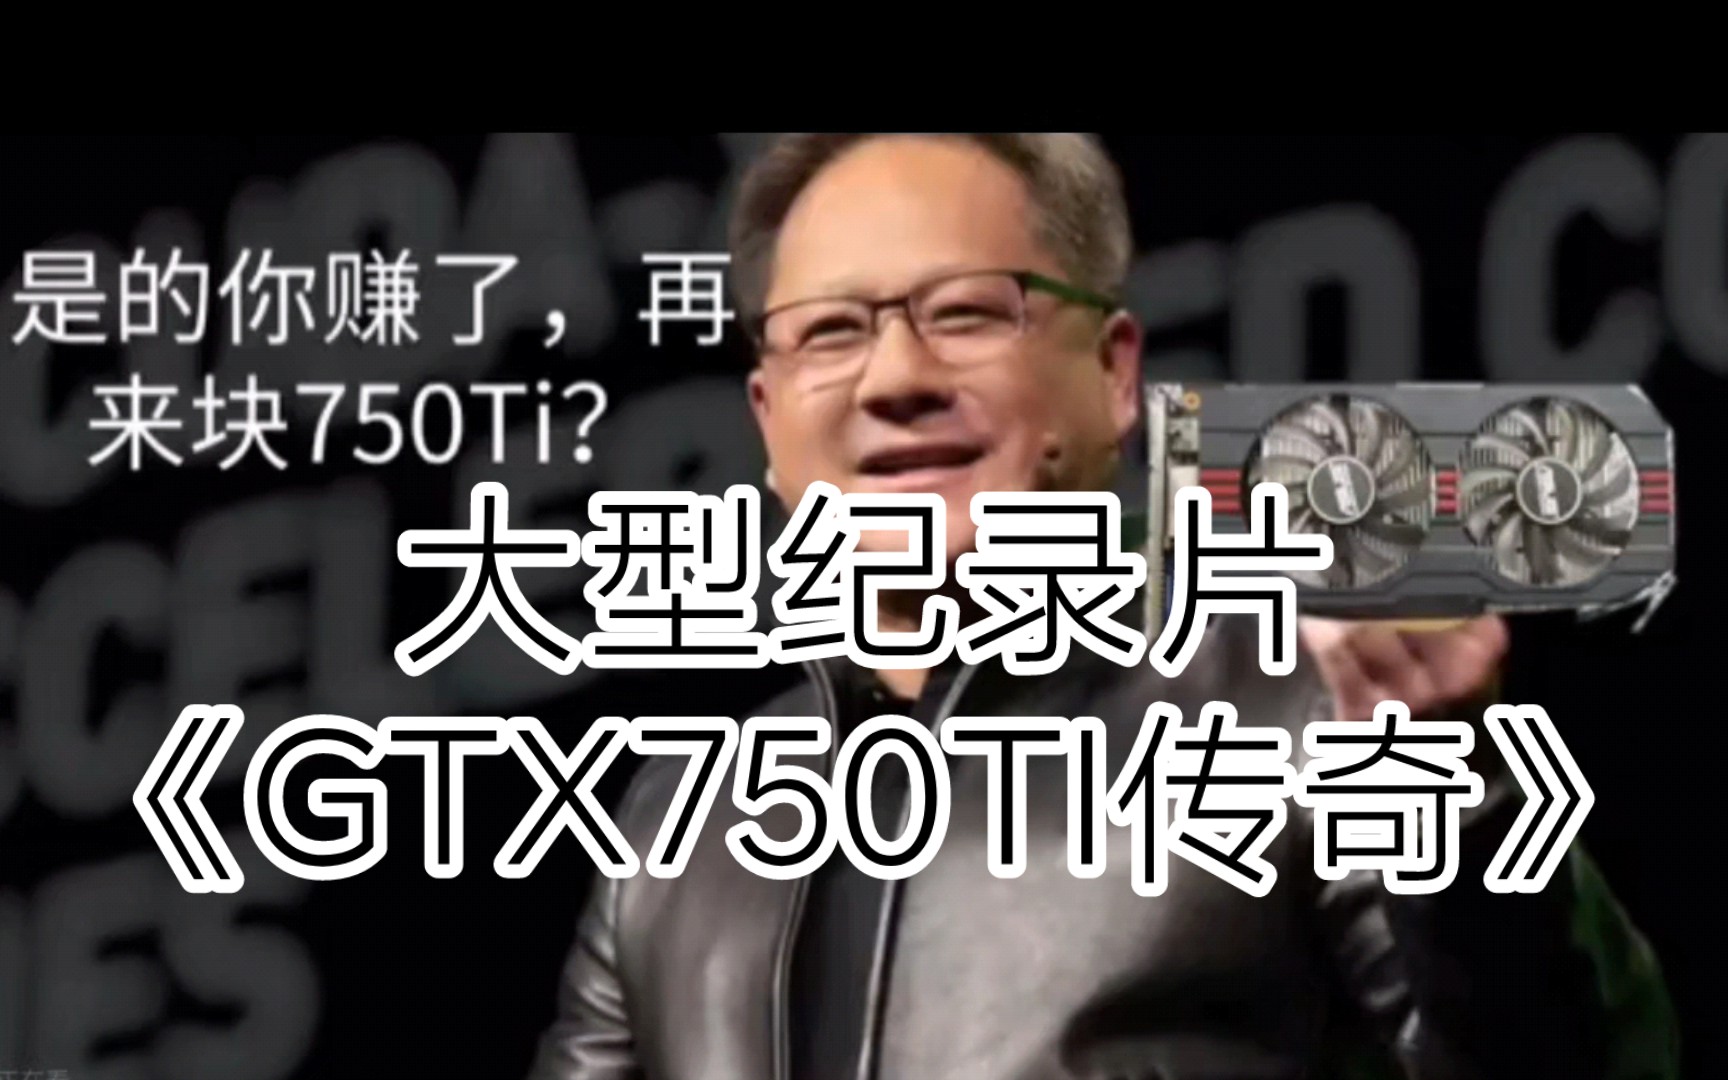 大型纪录片《GTX750ti传奇》